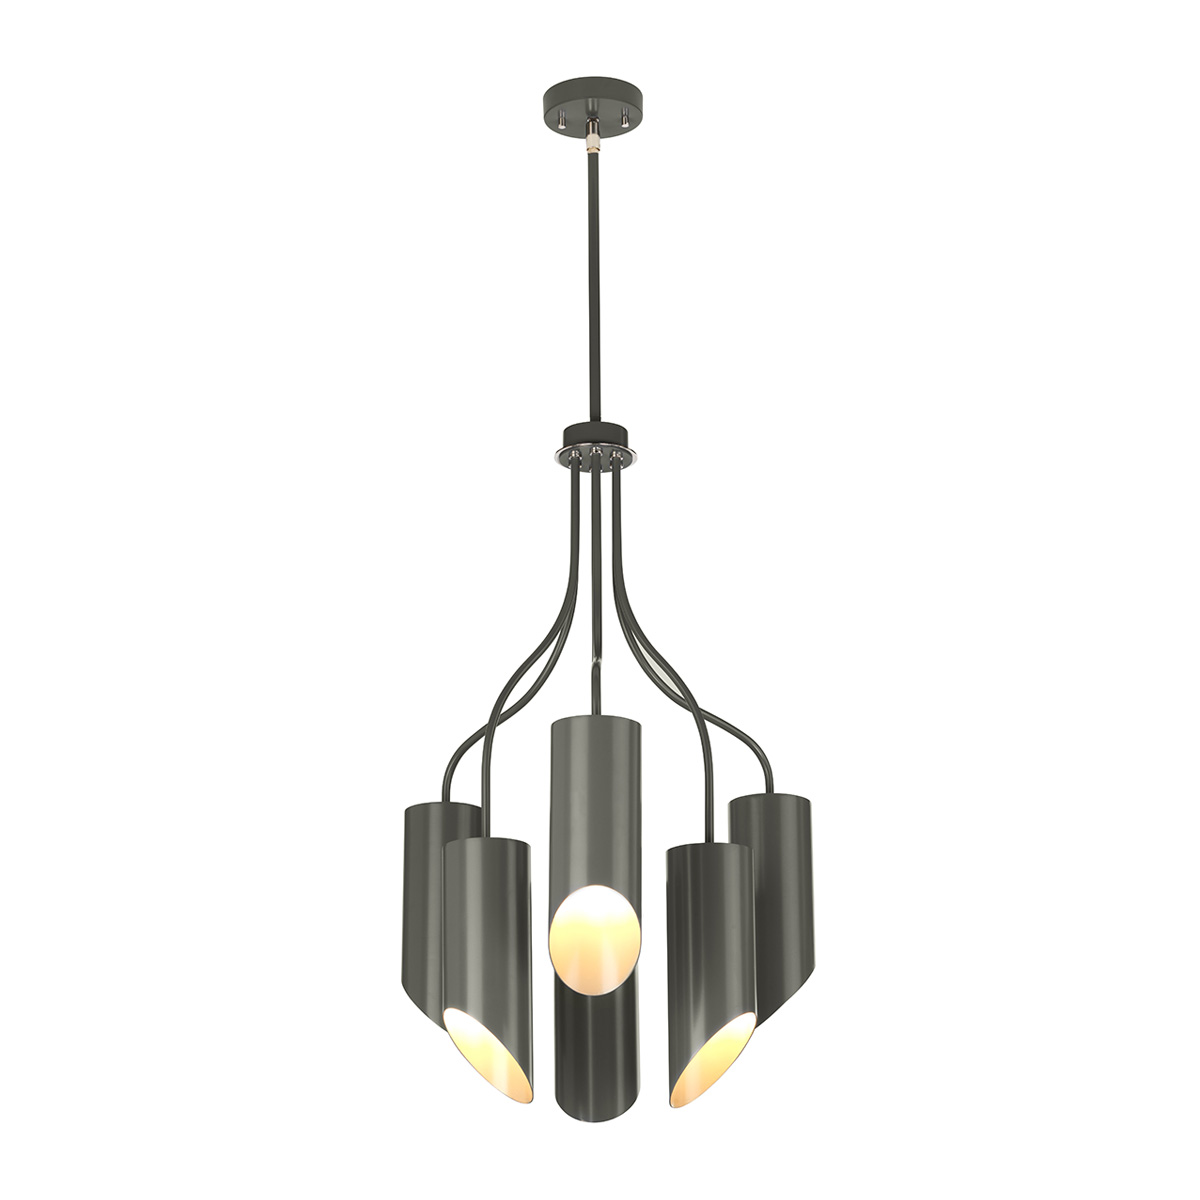 Подвесной светильник QUINTO6-GPN. Бренд: Elstead Lighting. Подвесные светильники